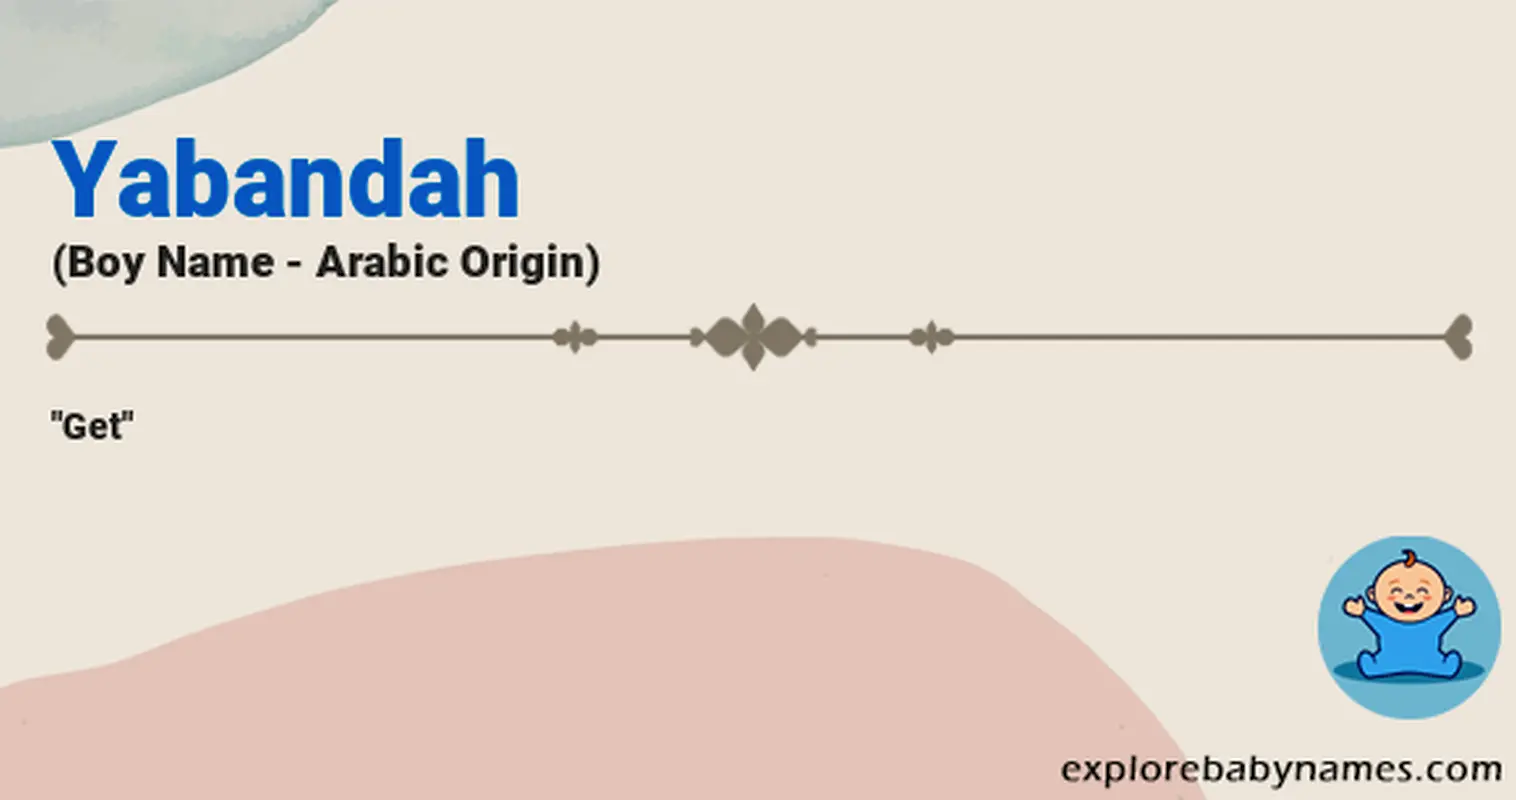 Meaning of Yabandah